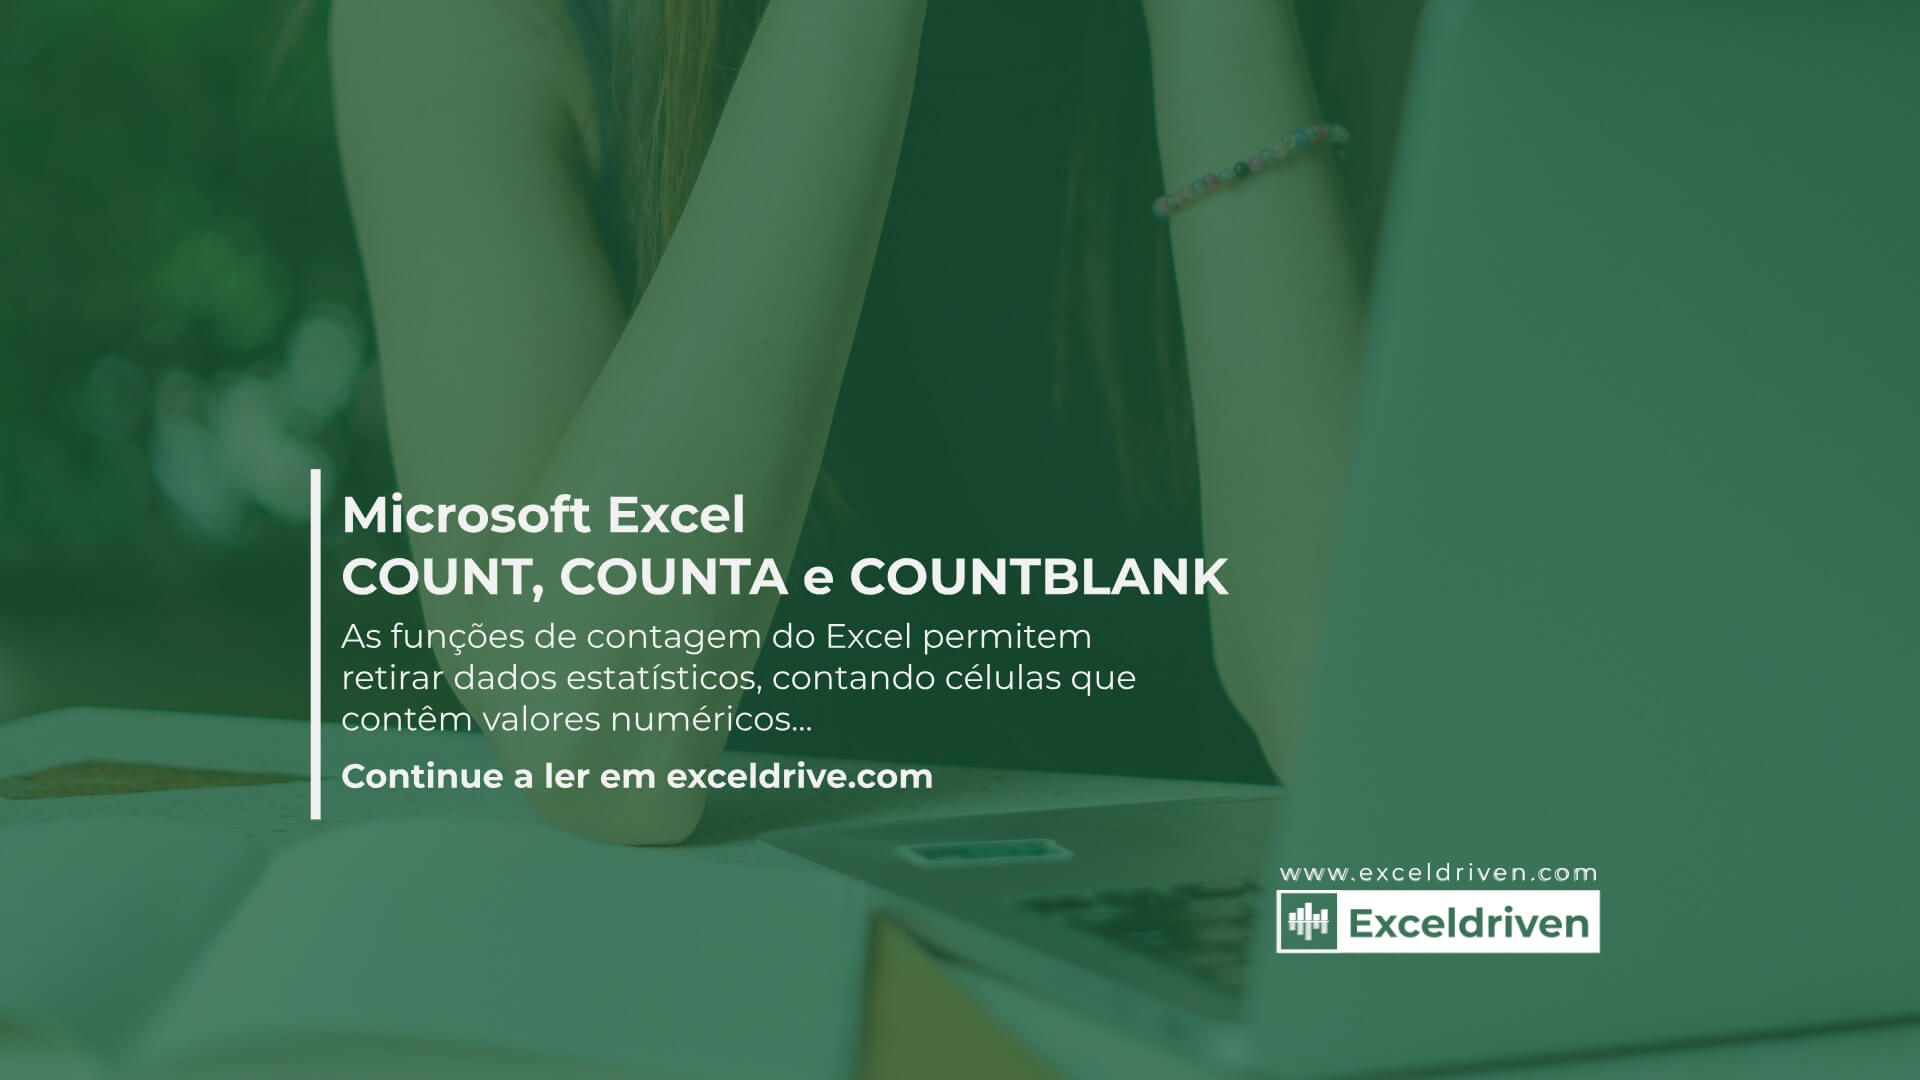 Microsoft Excel - Funções de contagem de valores no Excel